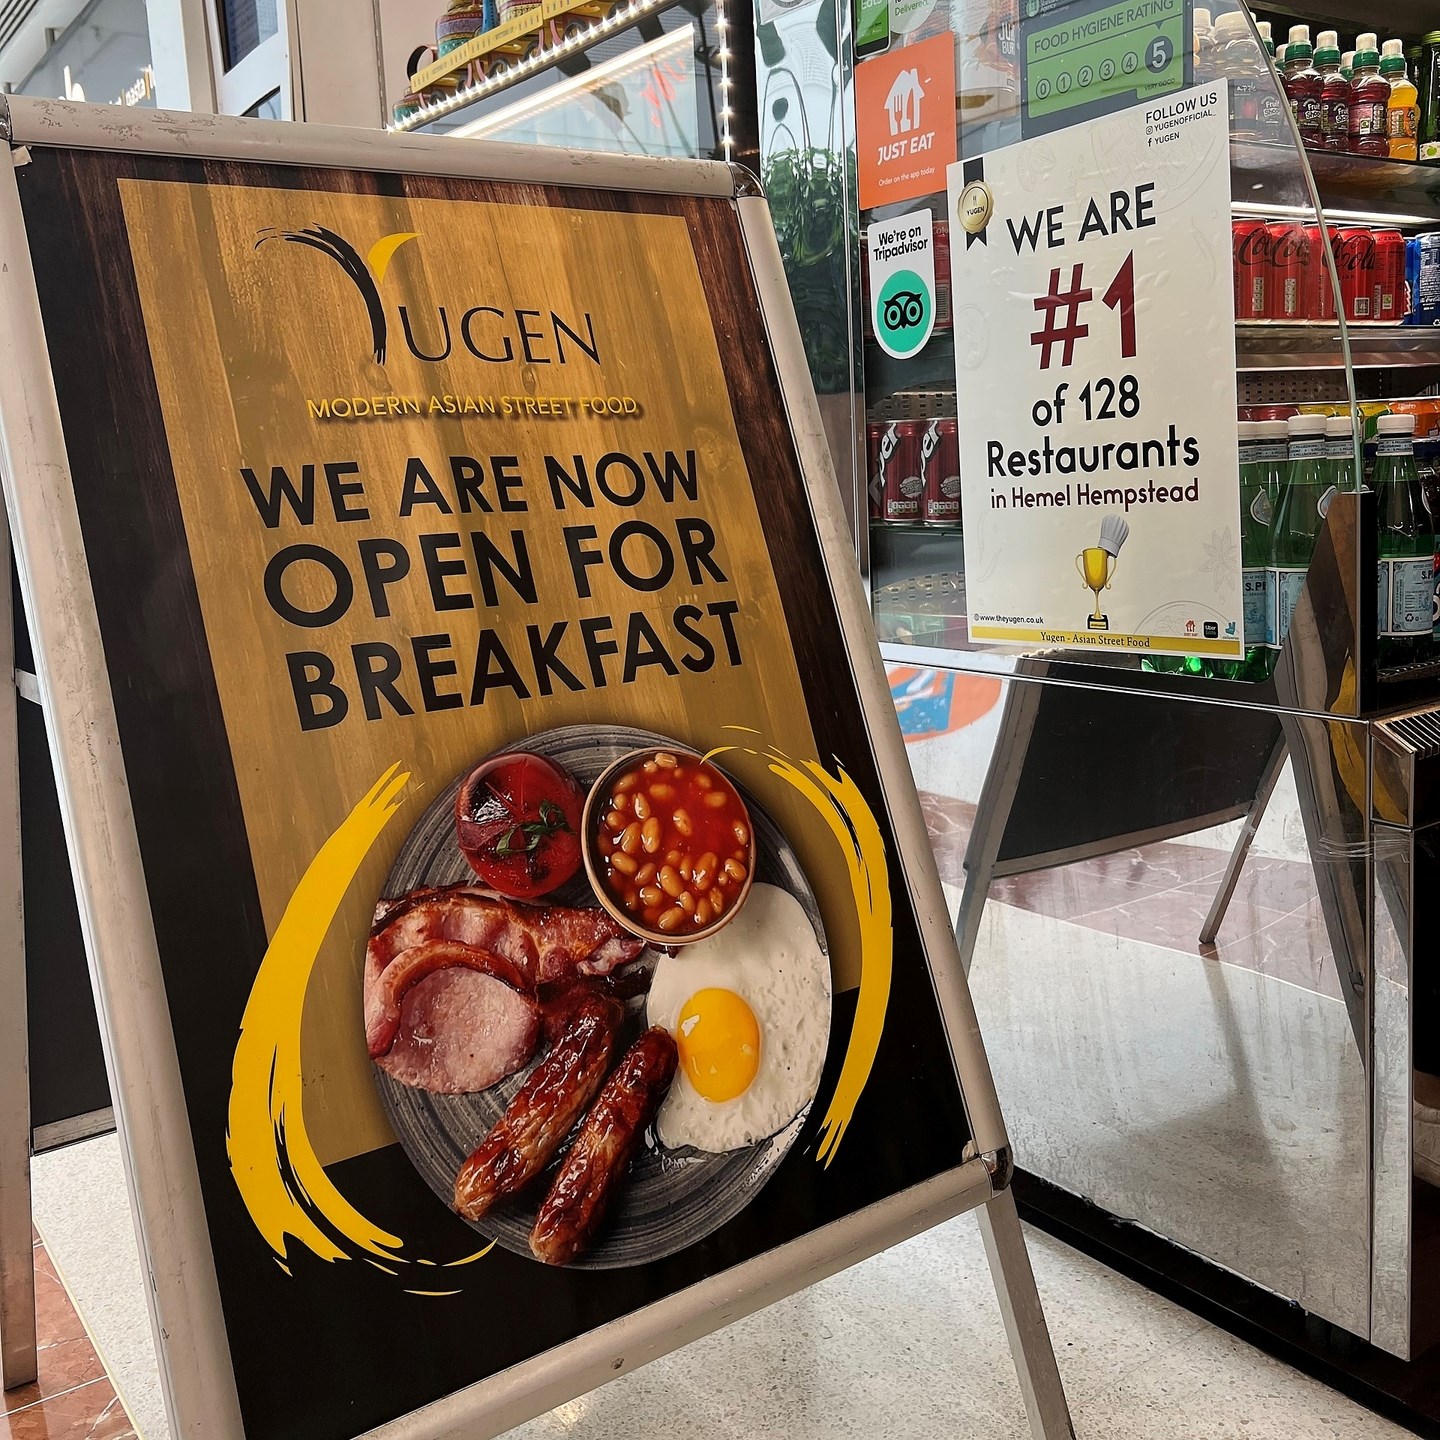 NEW Breakfast Menu at Yugen! 🥓🥐